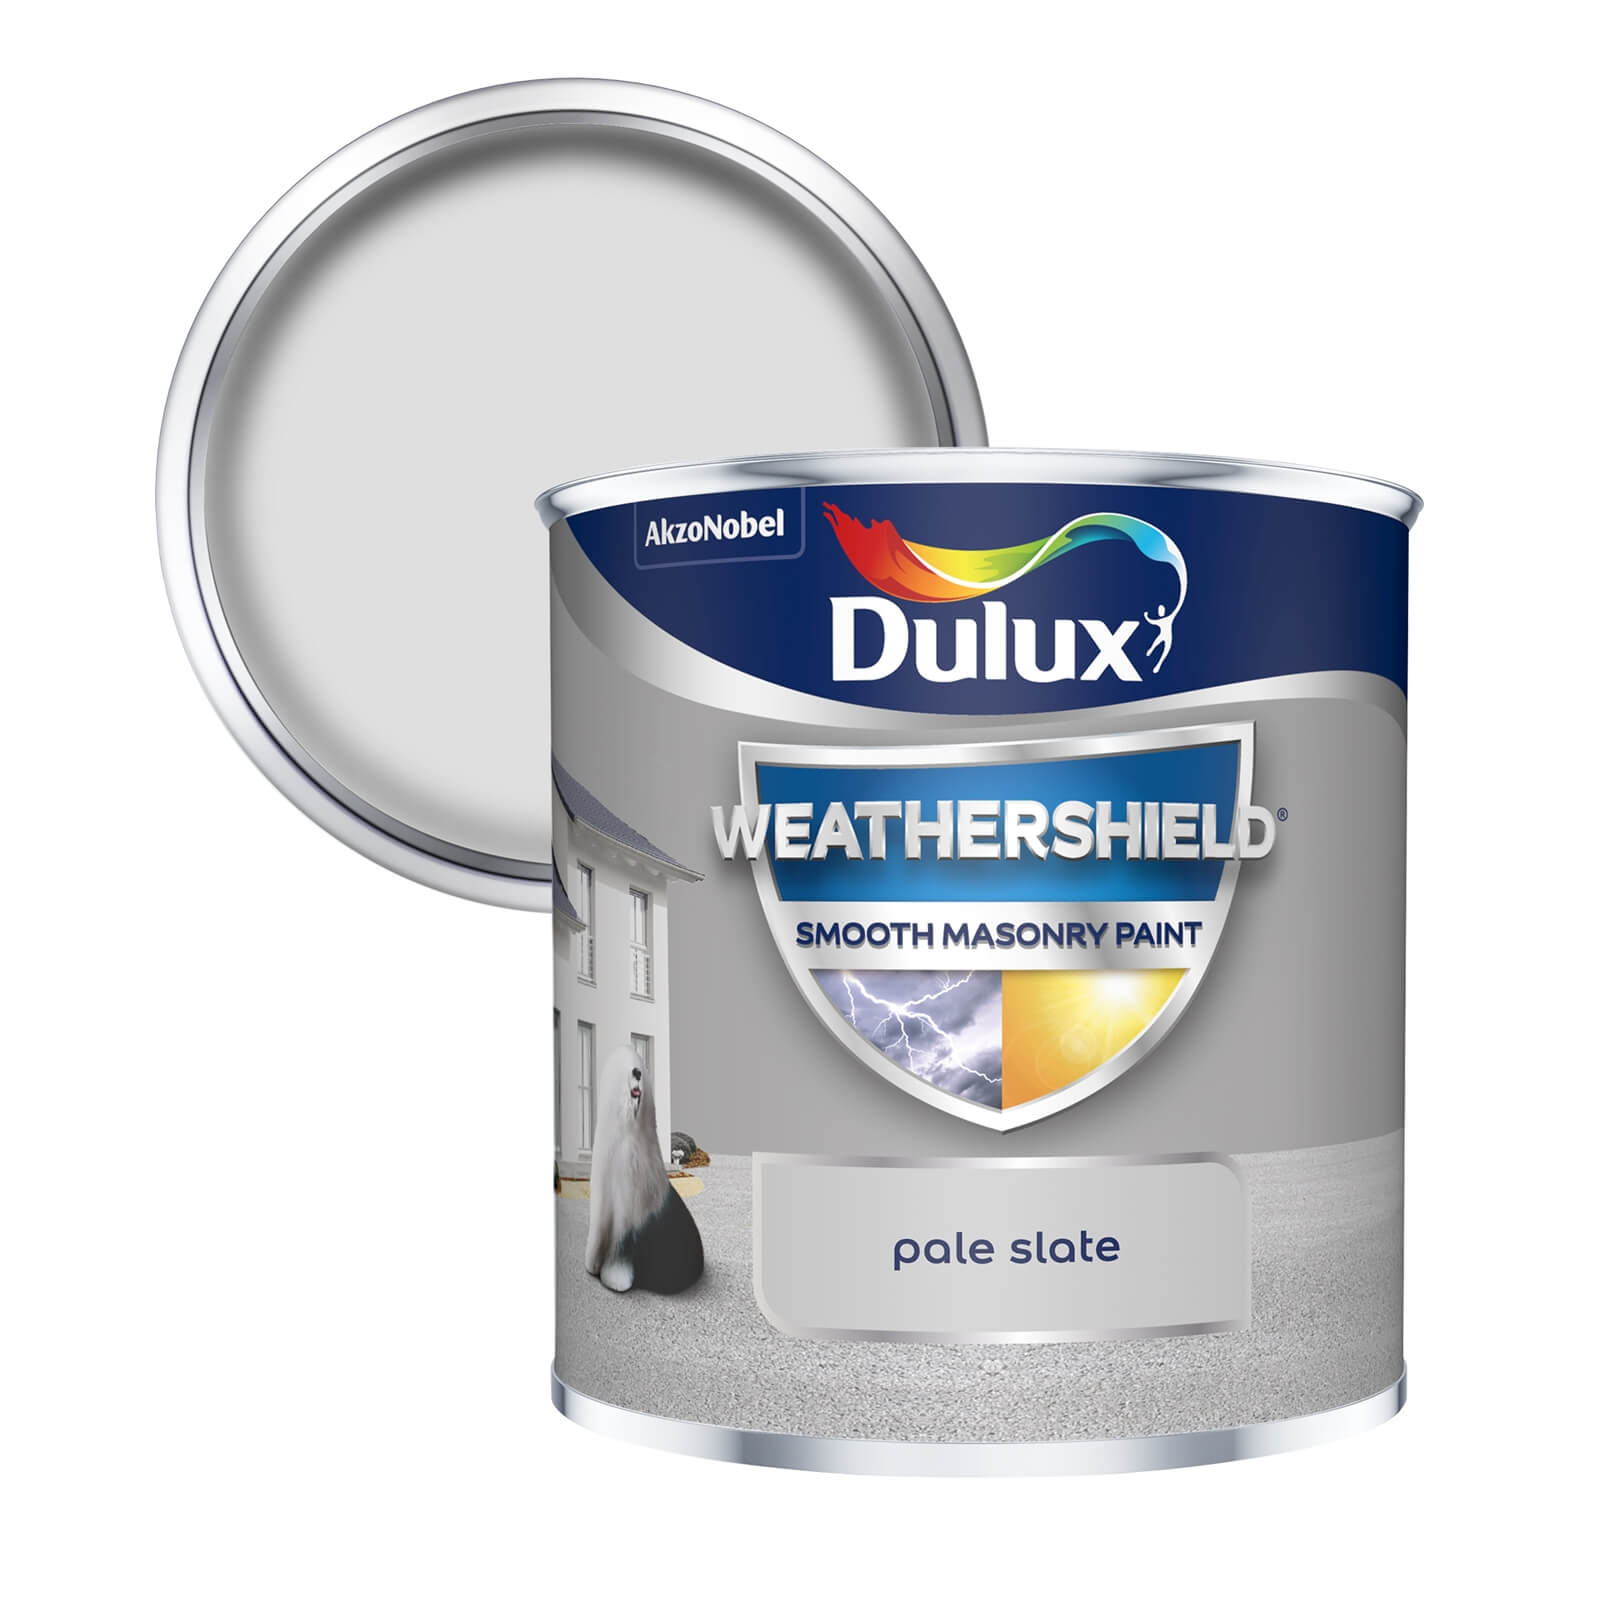 Dulux Weathershield Smooth Masonry Paint Pale Slate - Tester 250ml